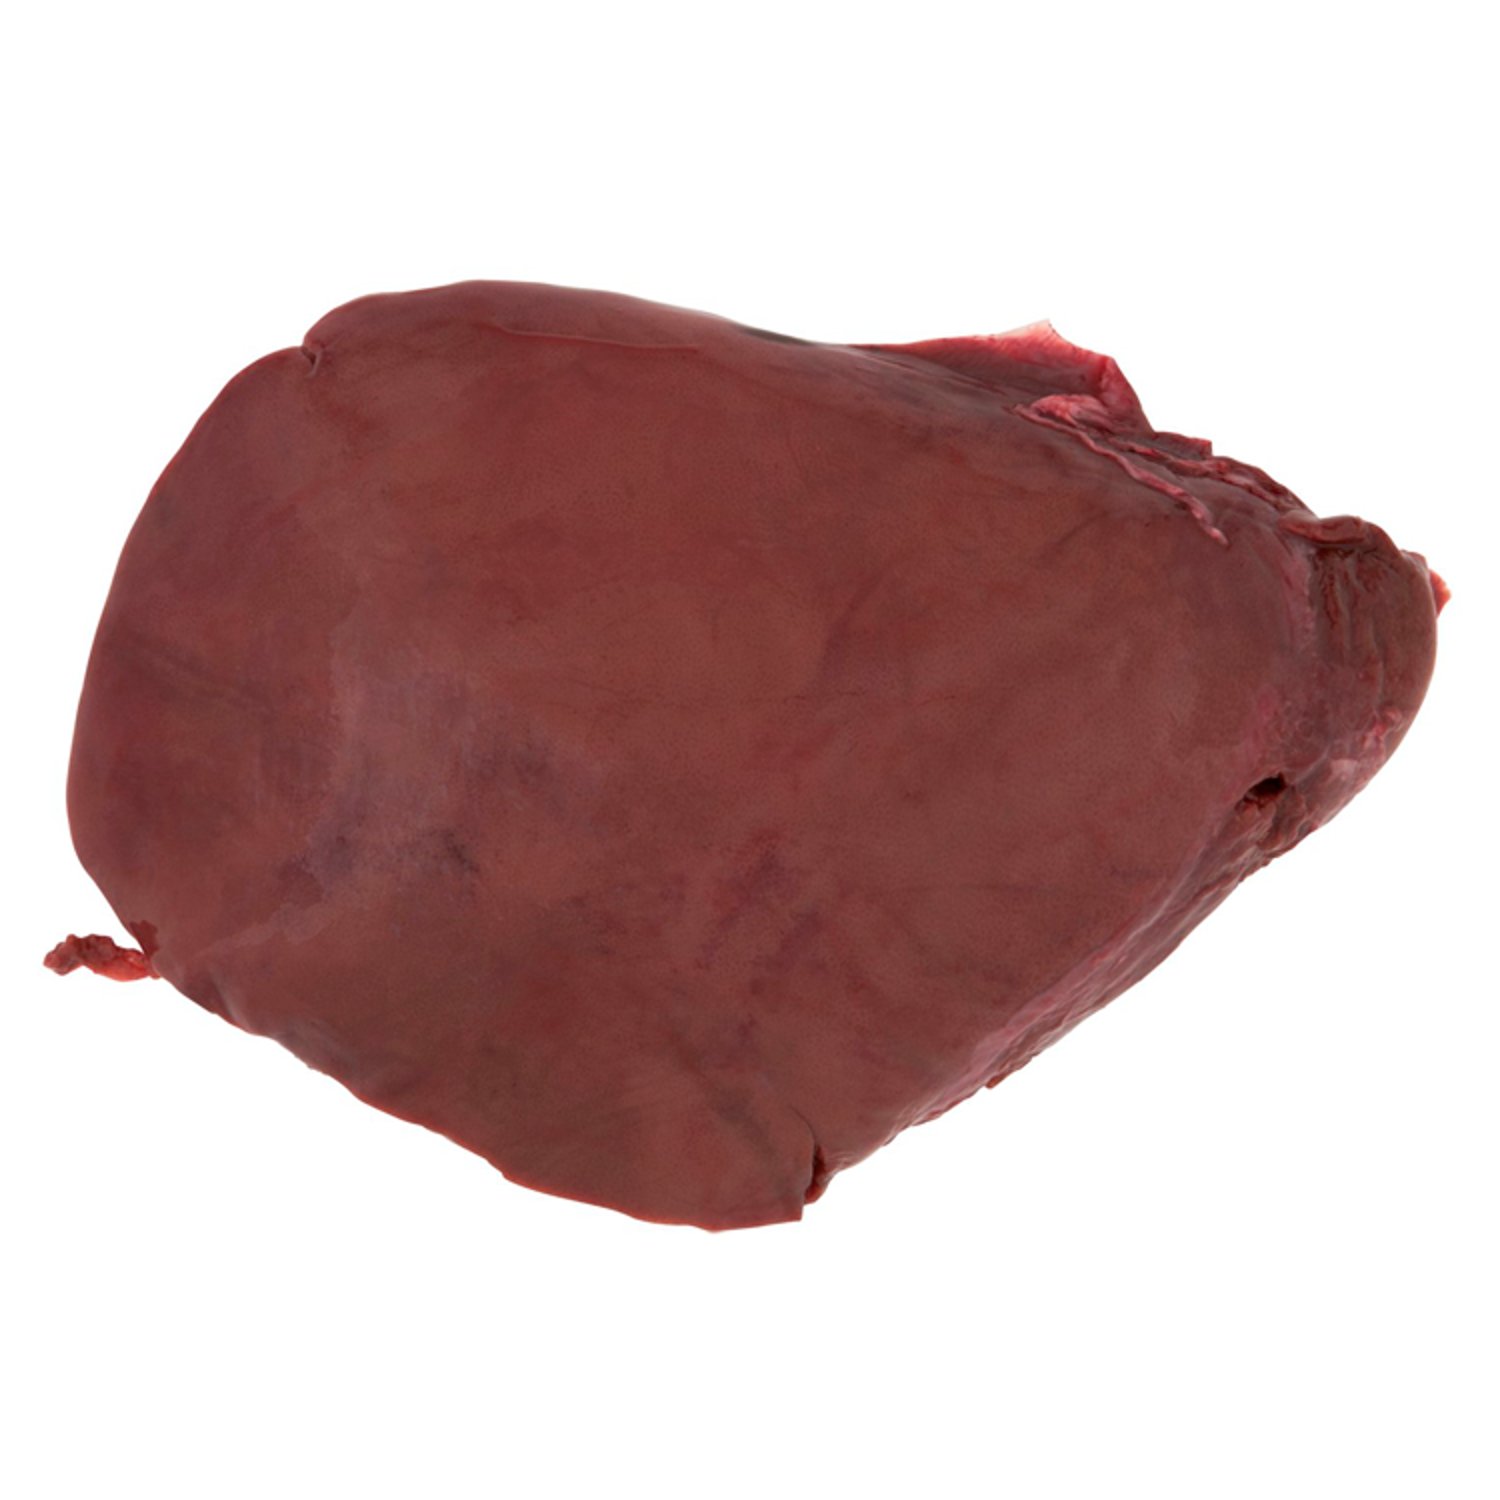 Lamb's Liver (1 kg)